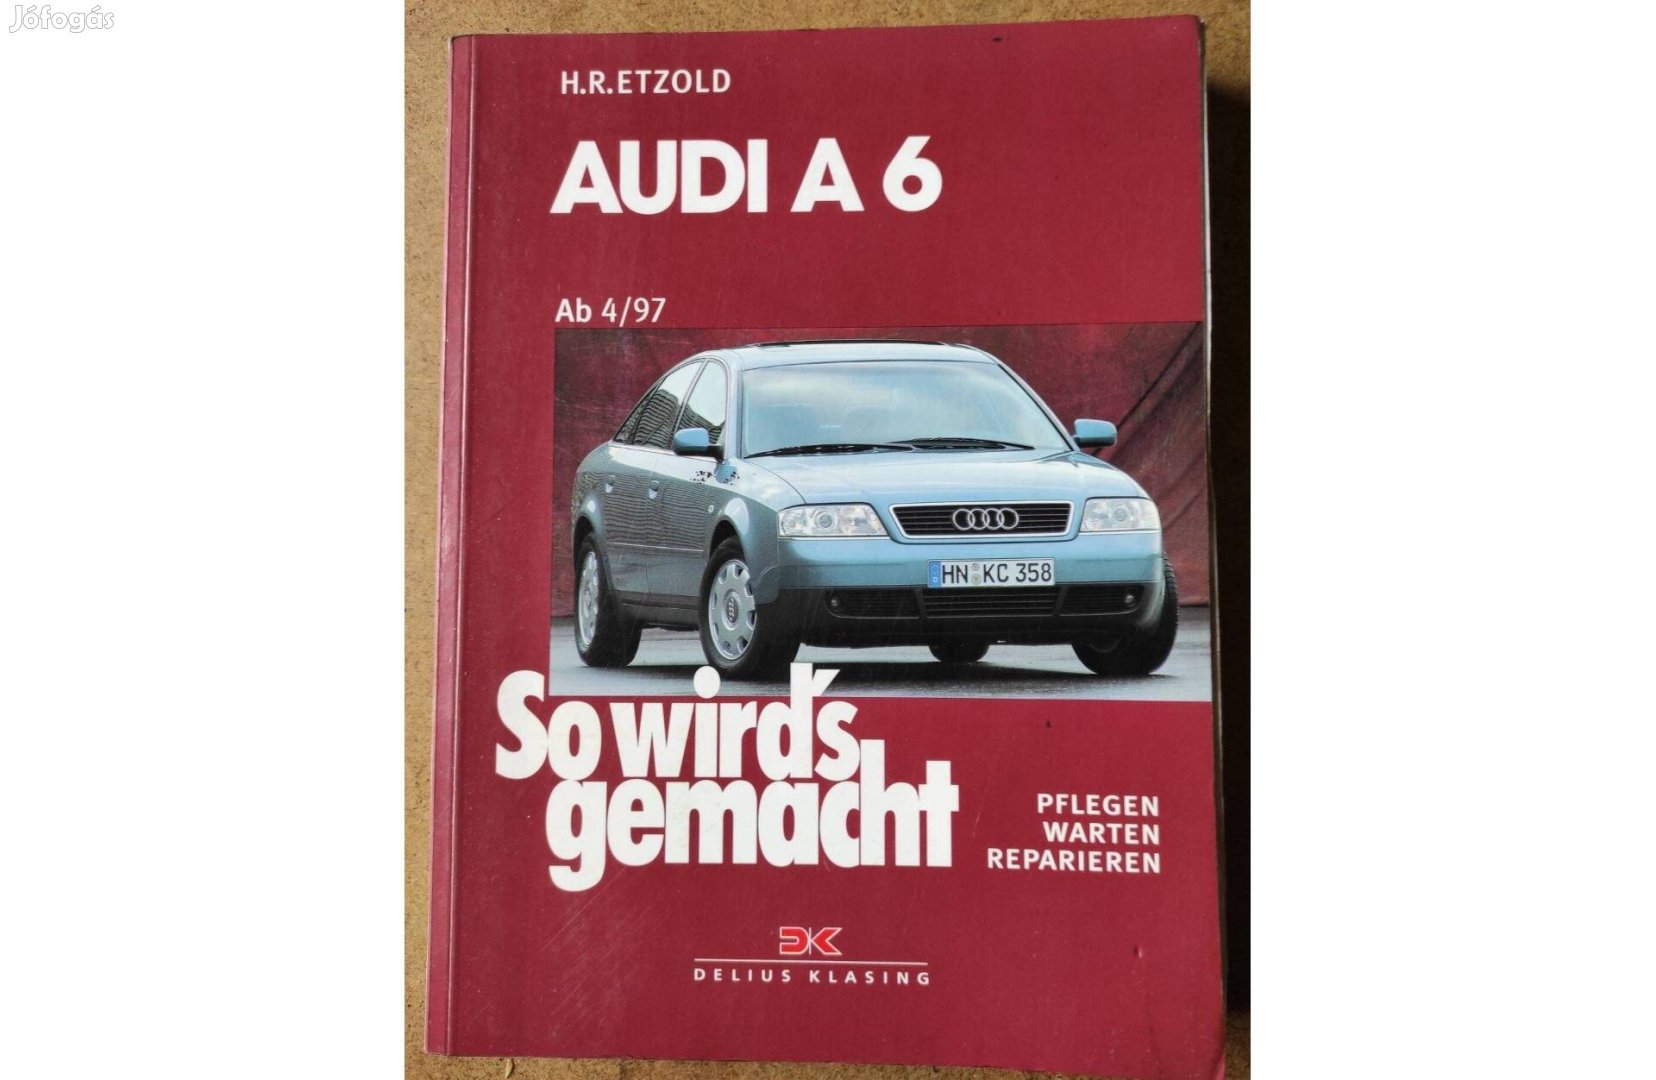 Audi A6 javítási karbantartási könyv